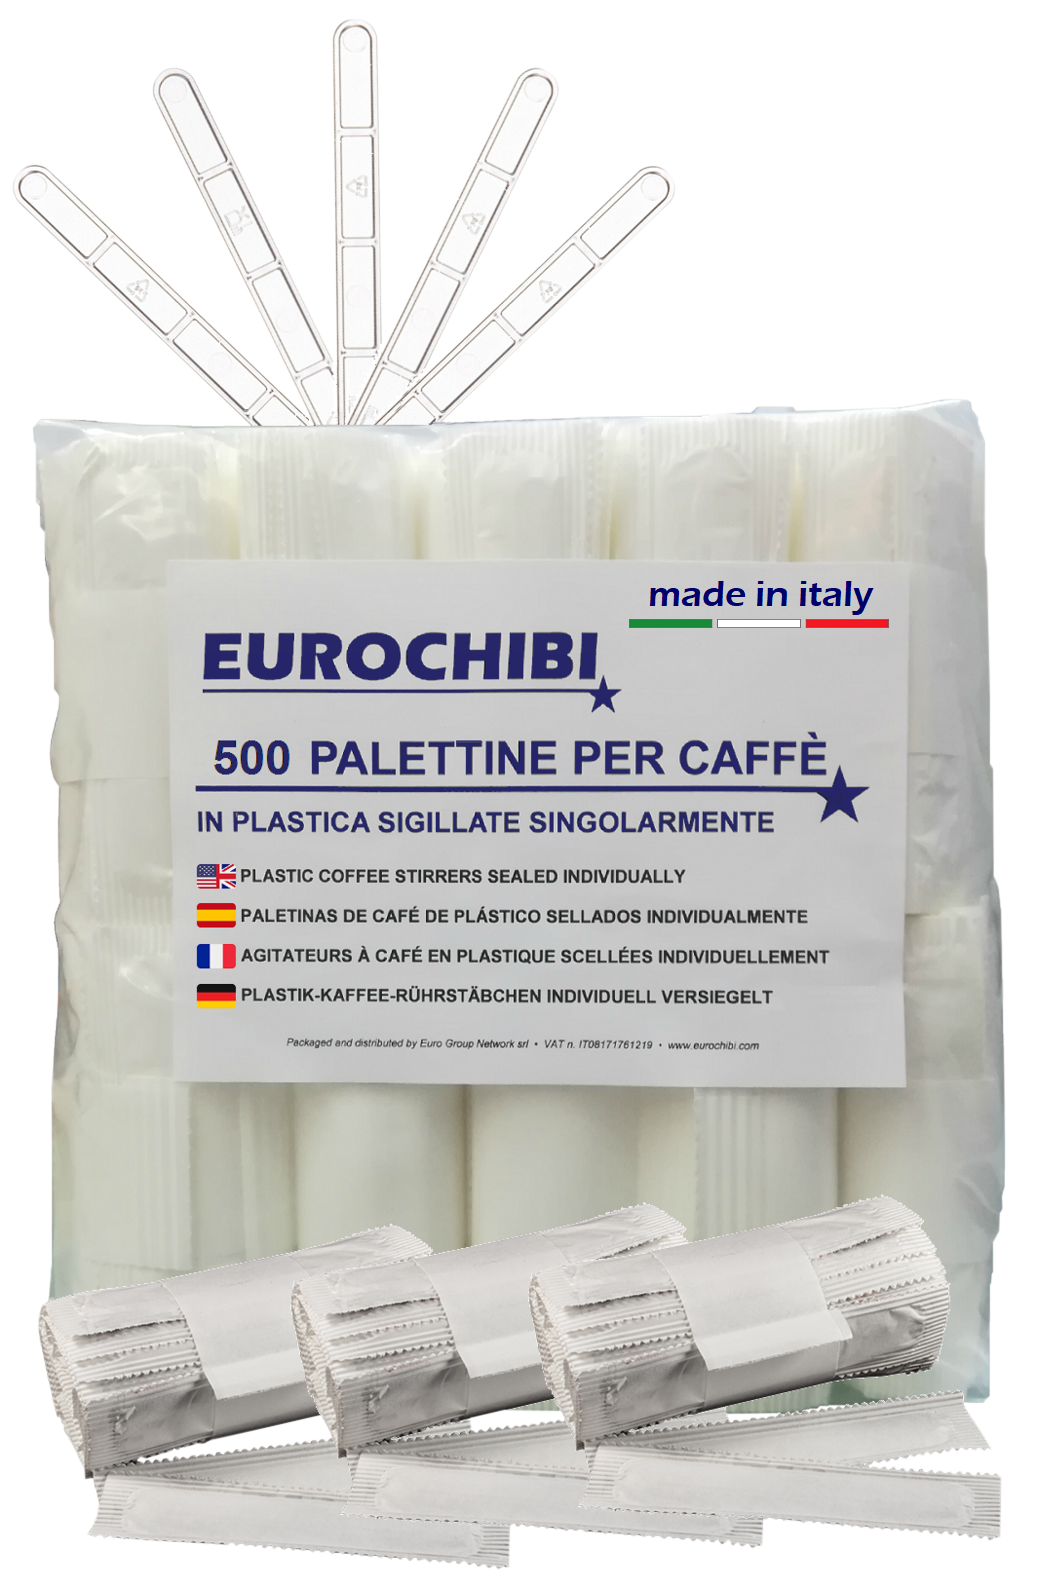 Eurochibi ® 500 Palettine Per Caffè In Plastica Sigillate Singolarmente